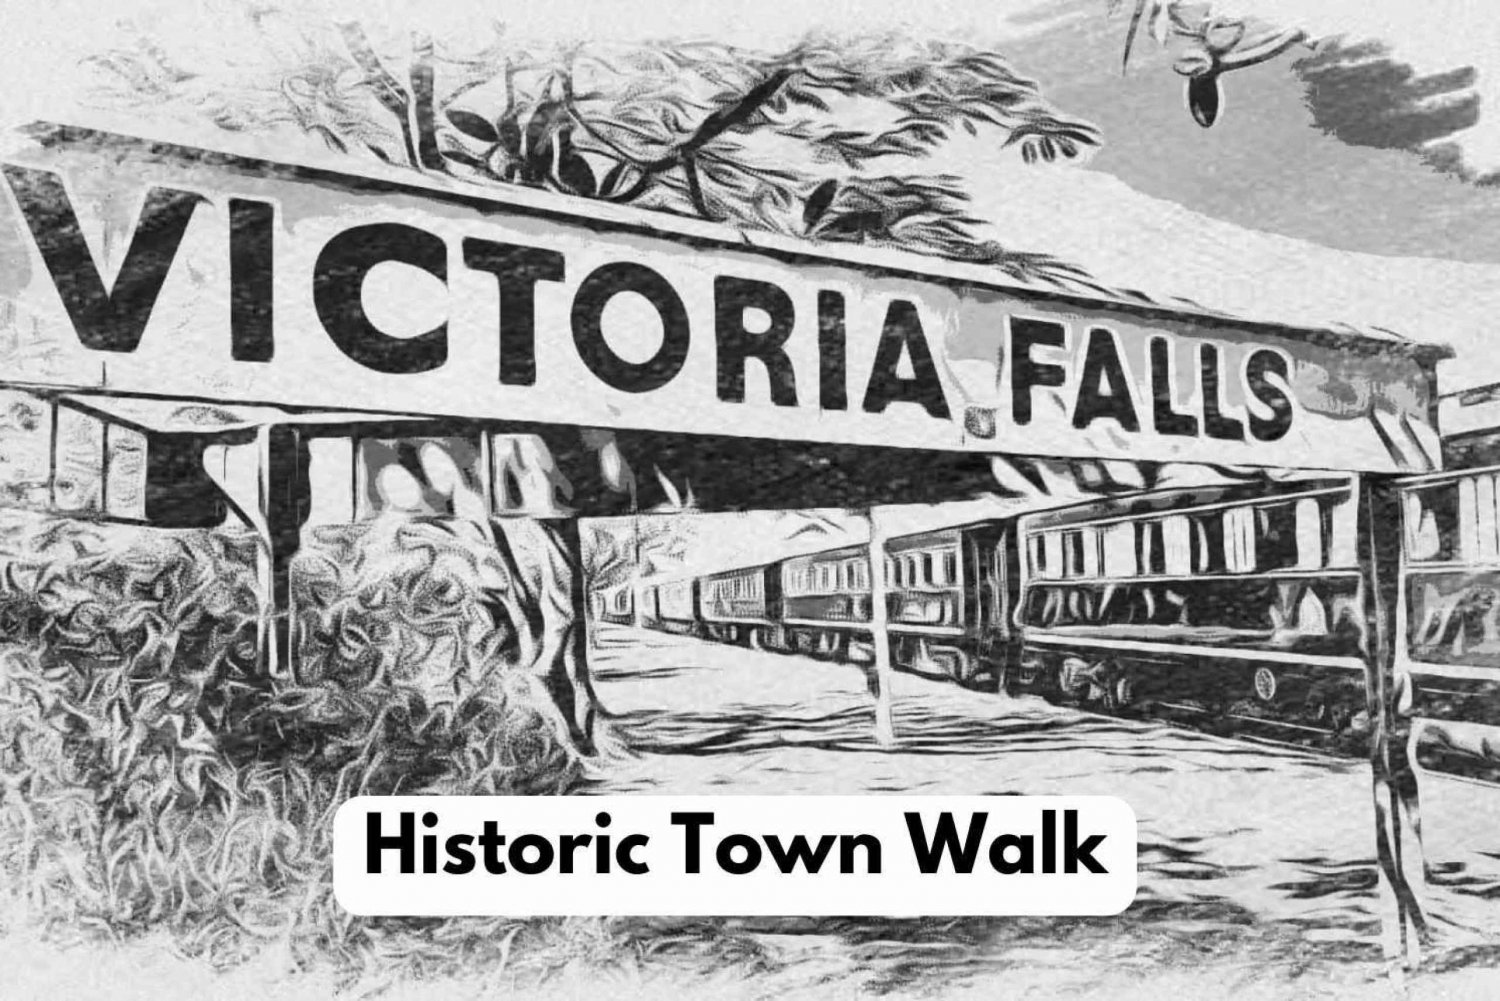 Cataratas Victoria: Visita a la Ciudad Histórica + Paseo por el bosque